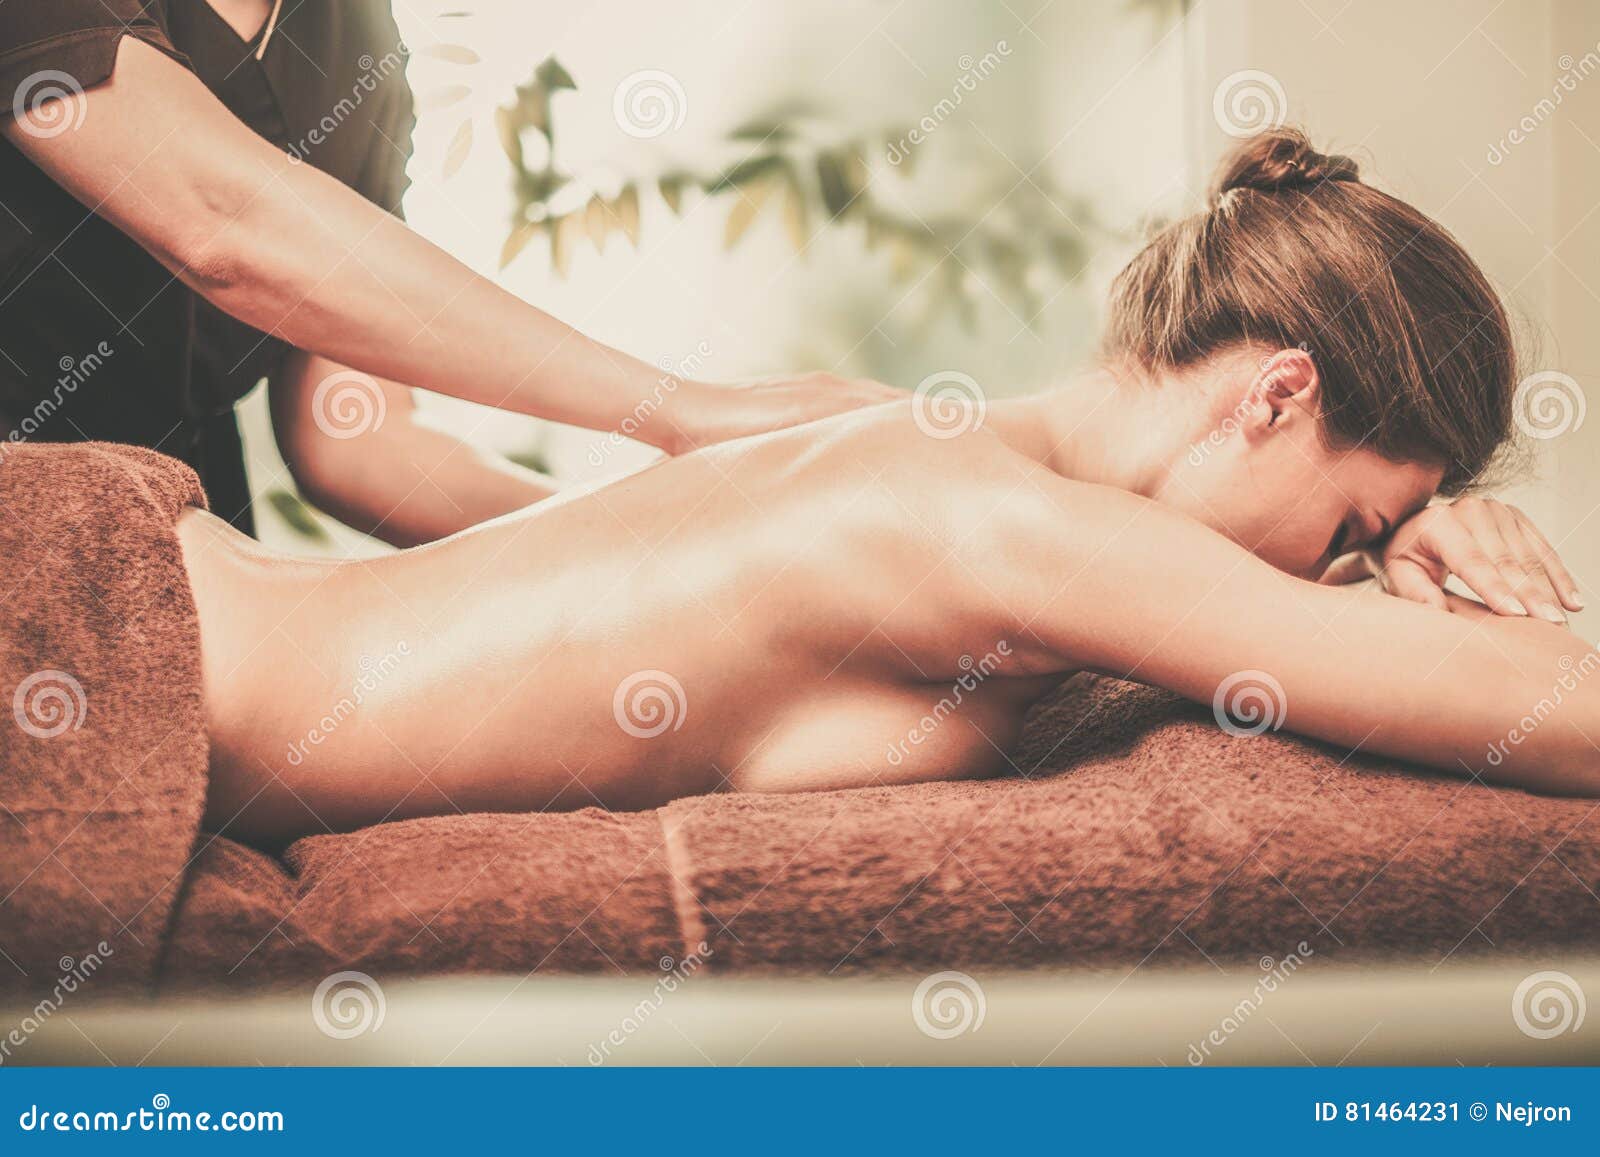 Горячая брюнетка наслаждается сексом после массажа